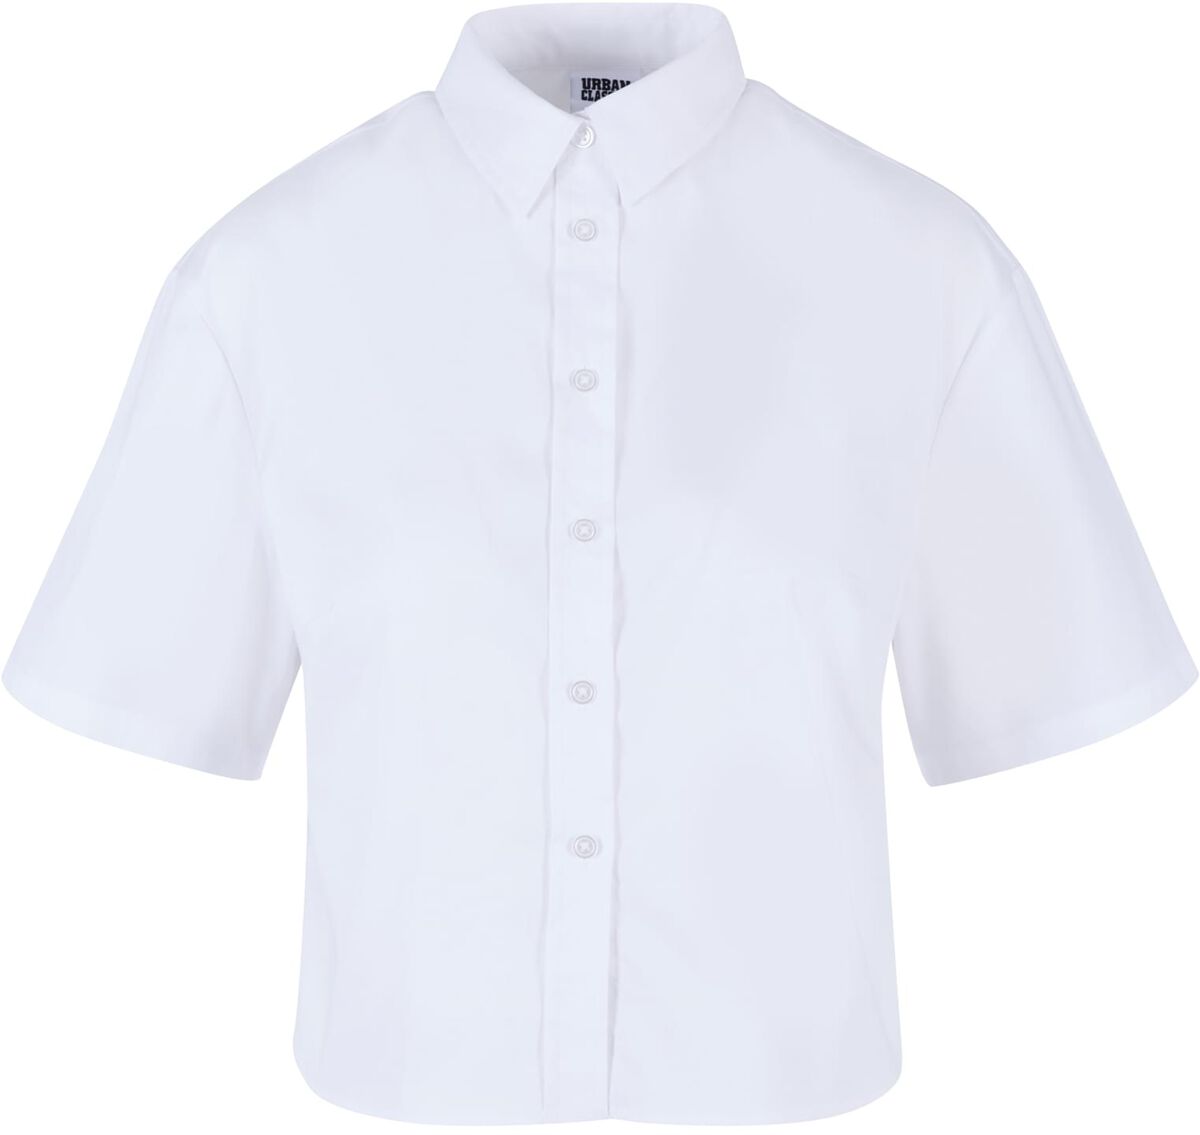 Urban Classics Kurzarmhemd - Ladies Oversized Shirt - XS bis 3XL - für Damen - Größe S - weiß